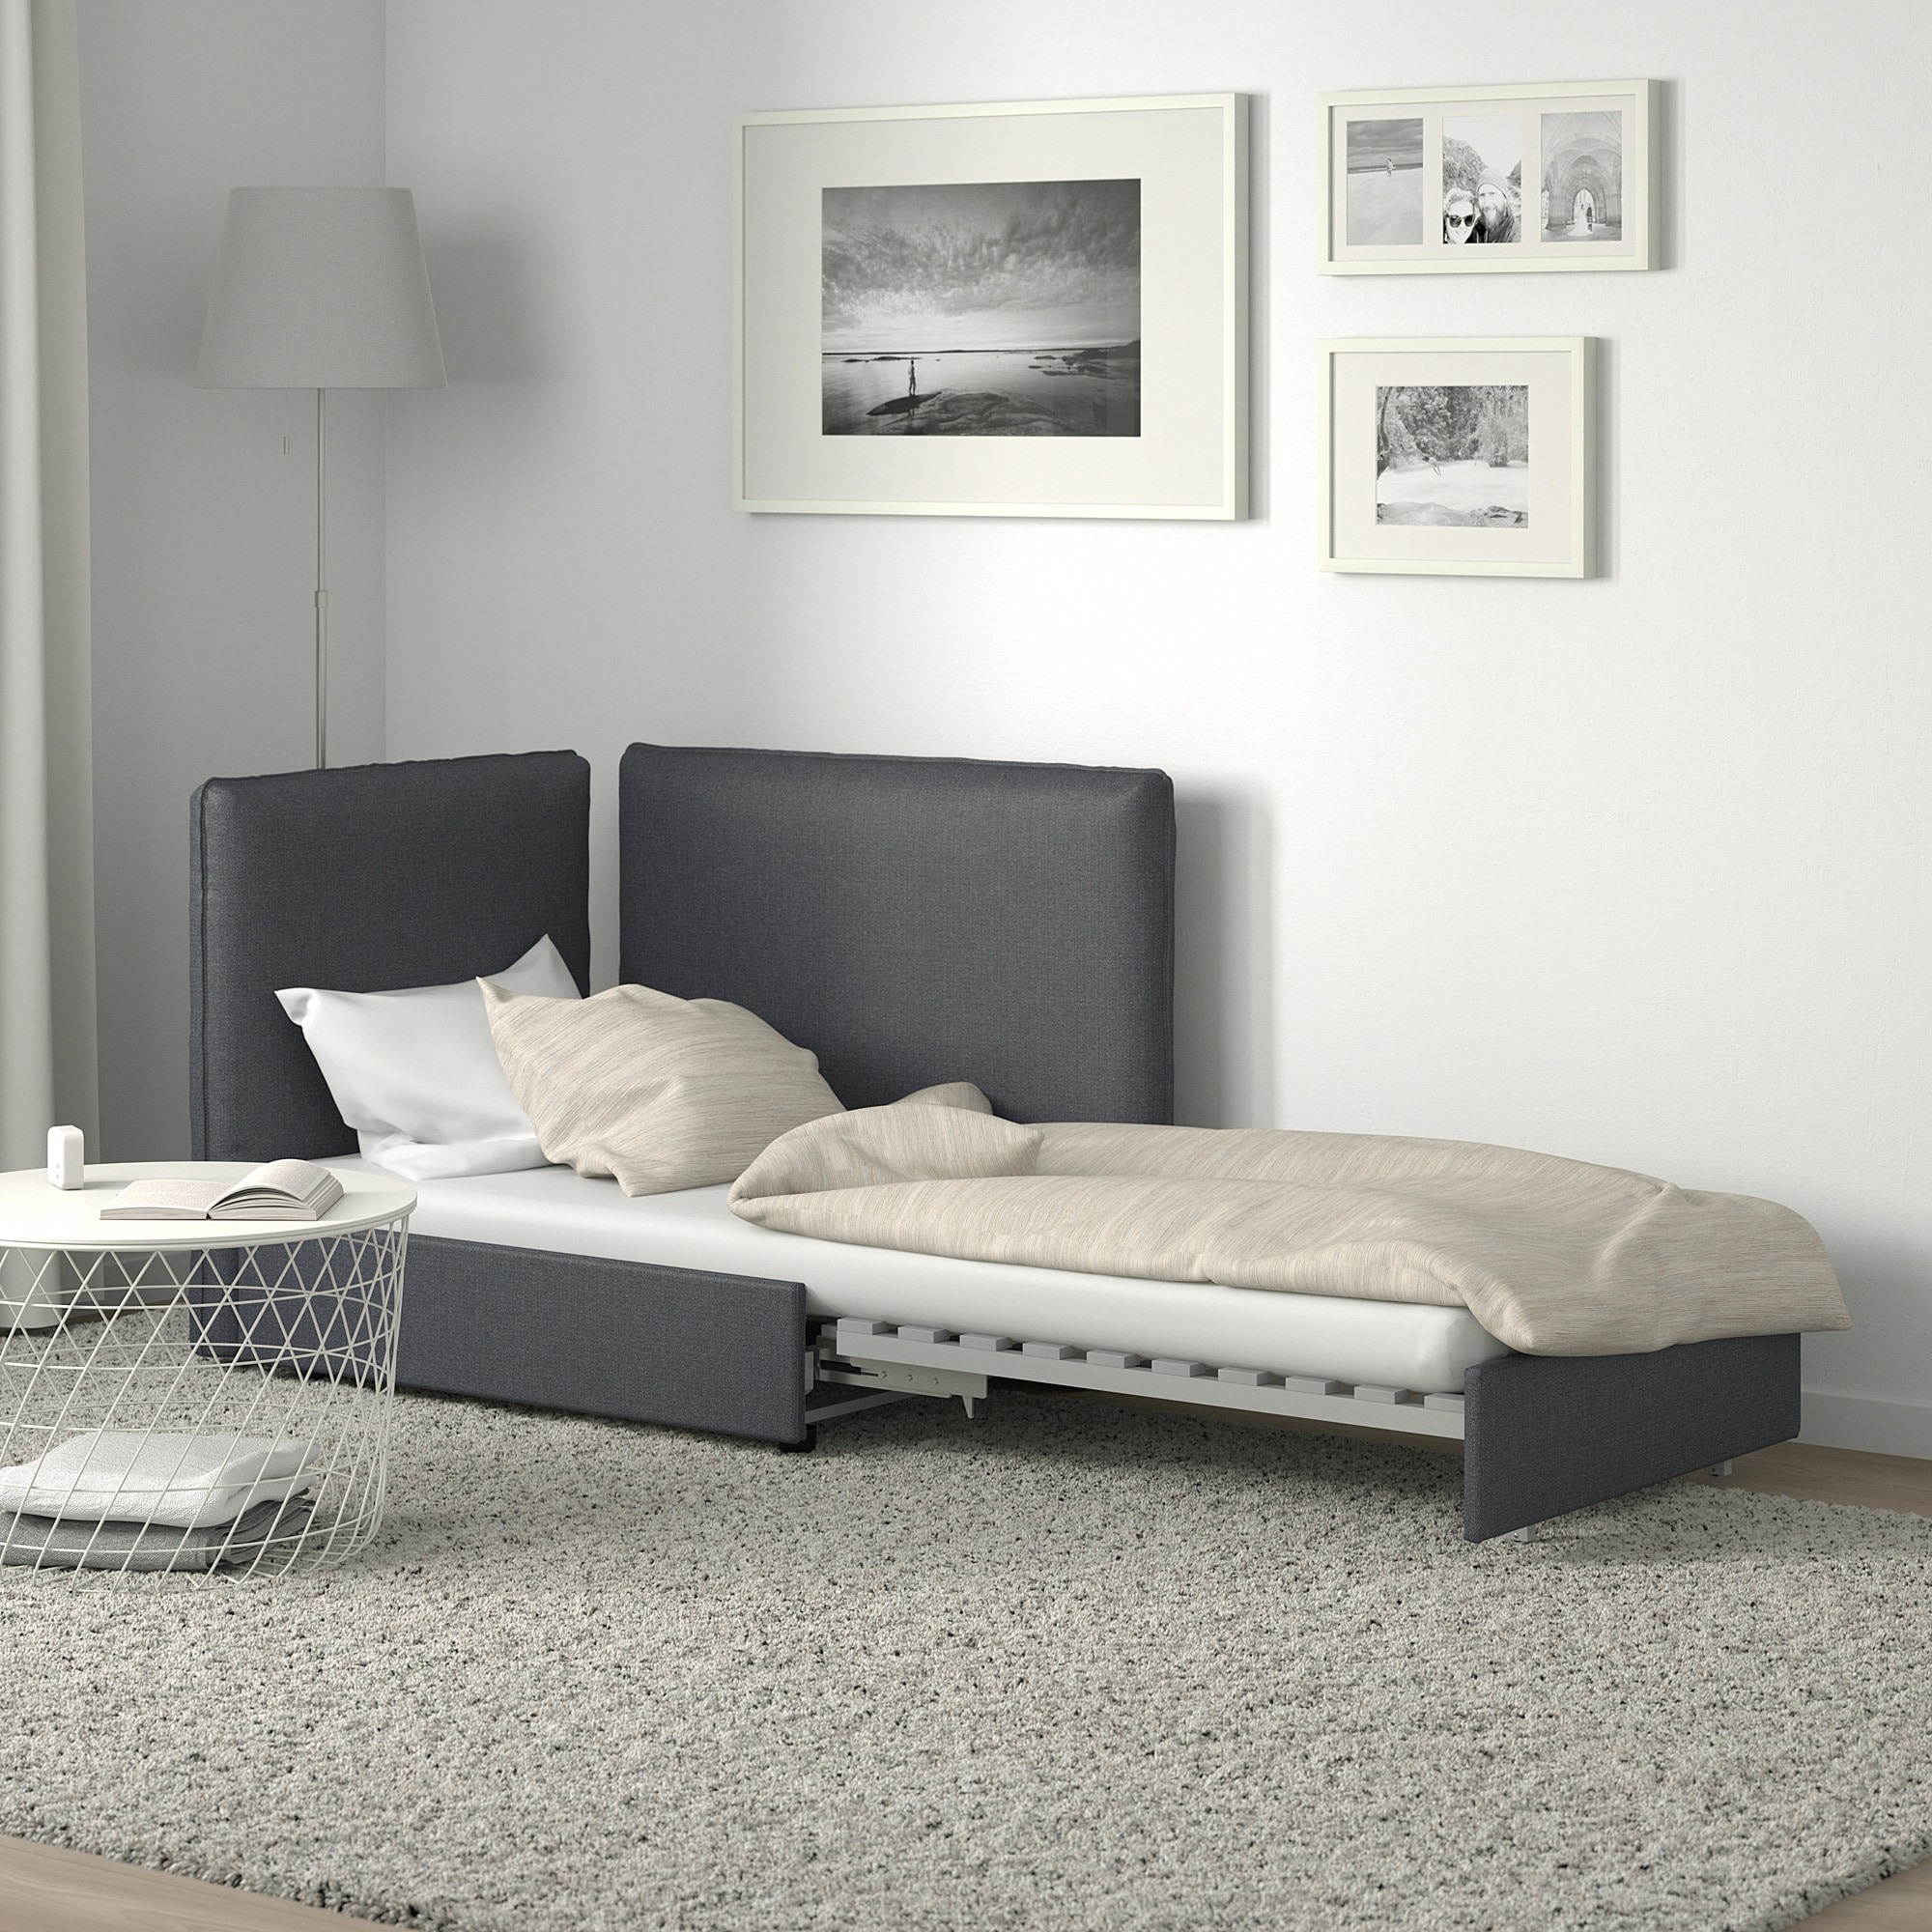 IKEA poltrona letto